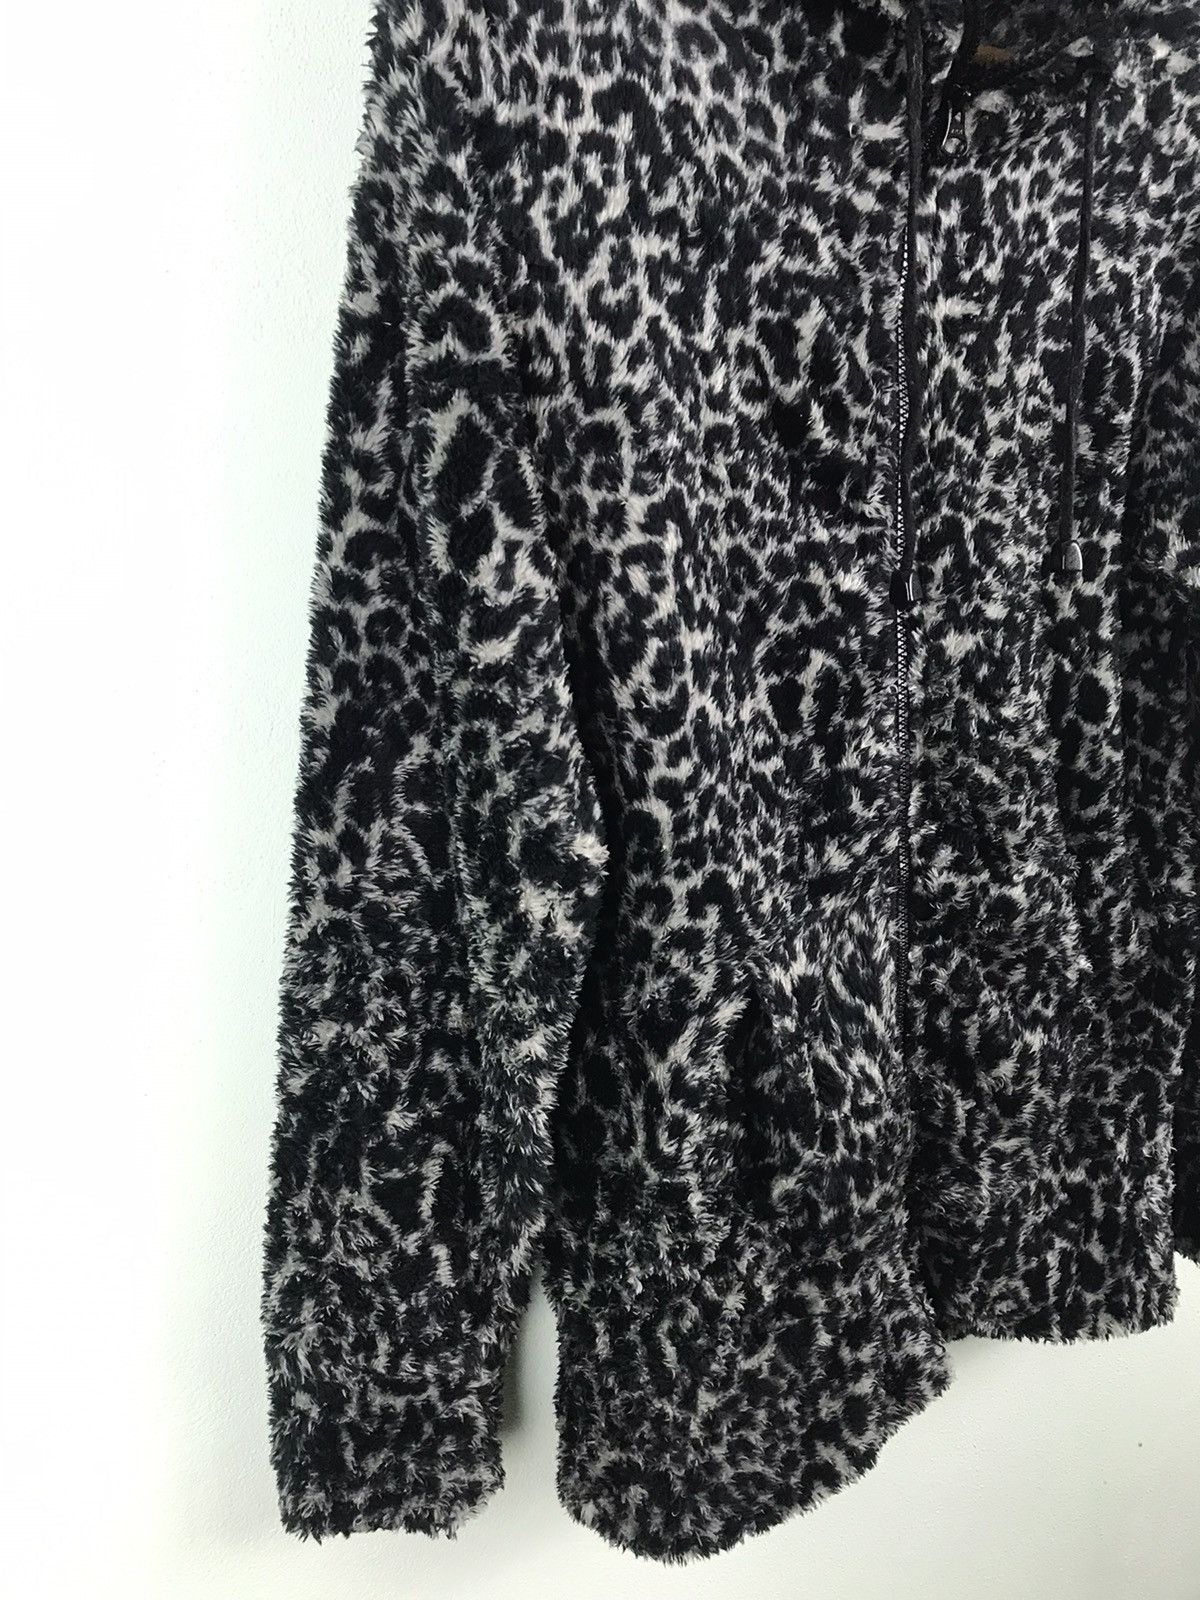 Japanese Brand - Healthy Karen Leopard faux fur hoodie - GH1119 - 2